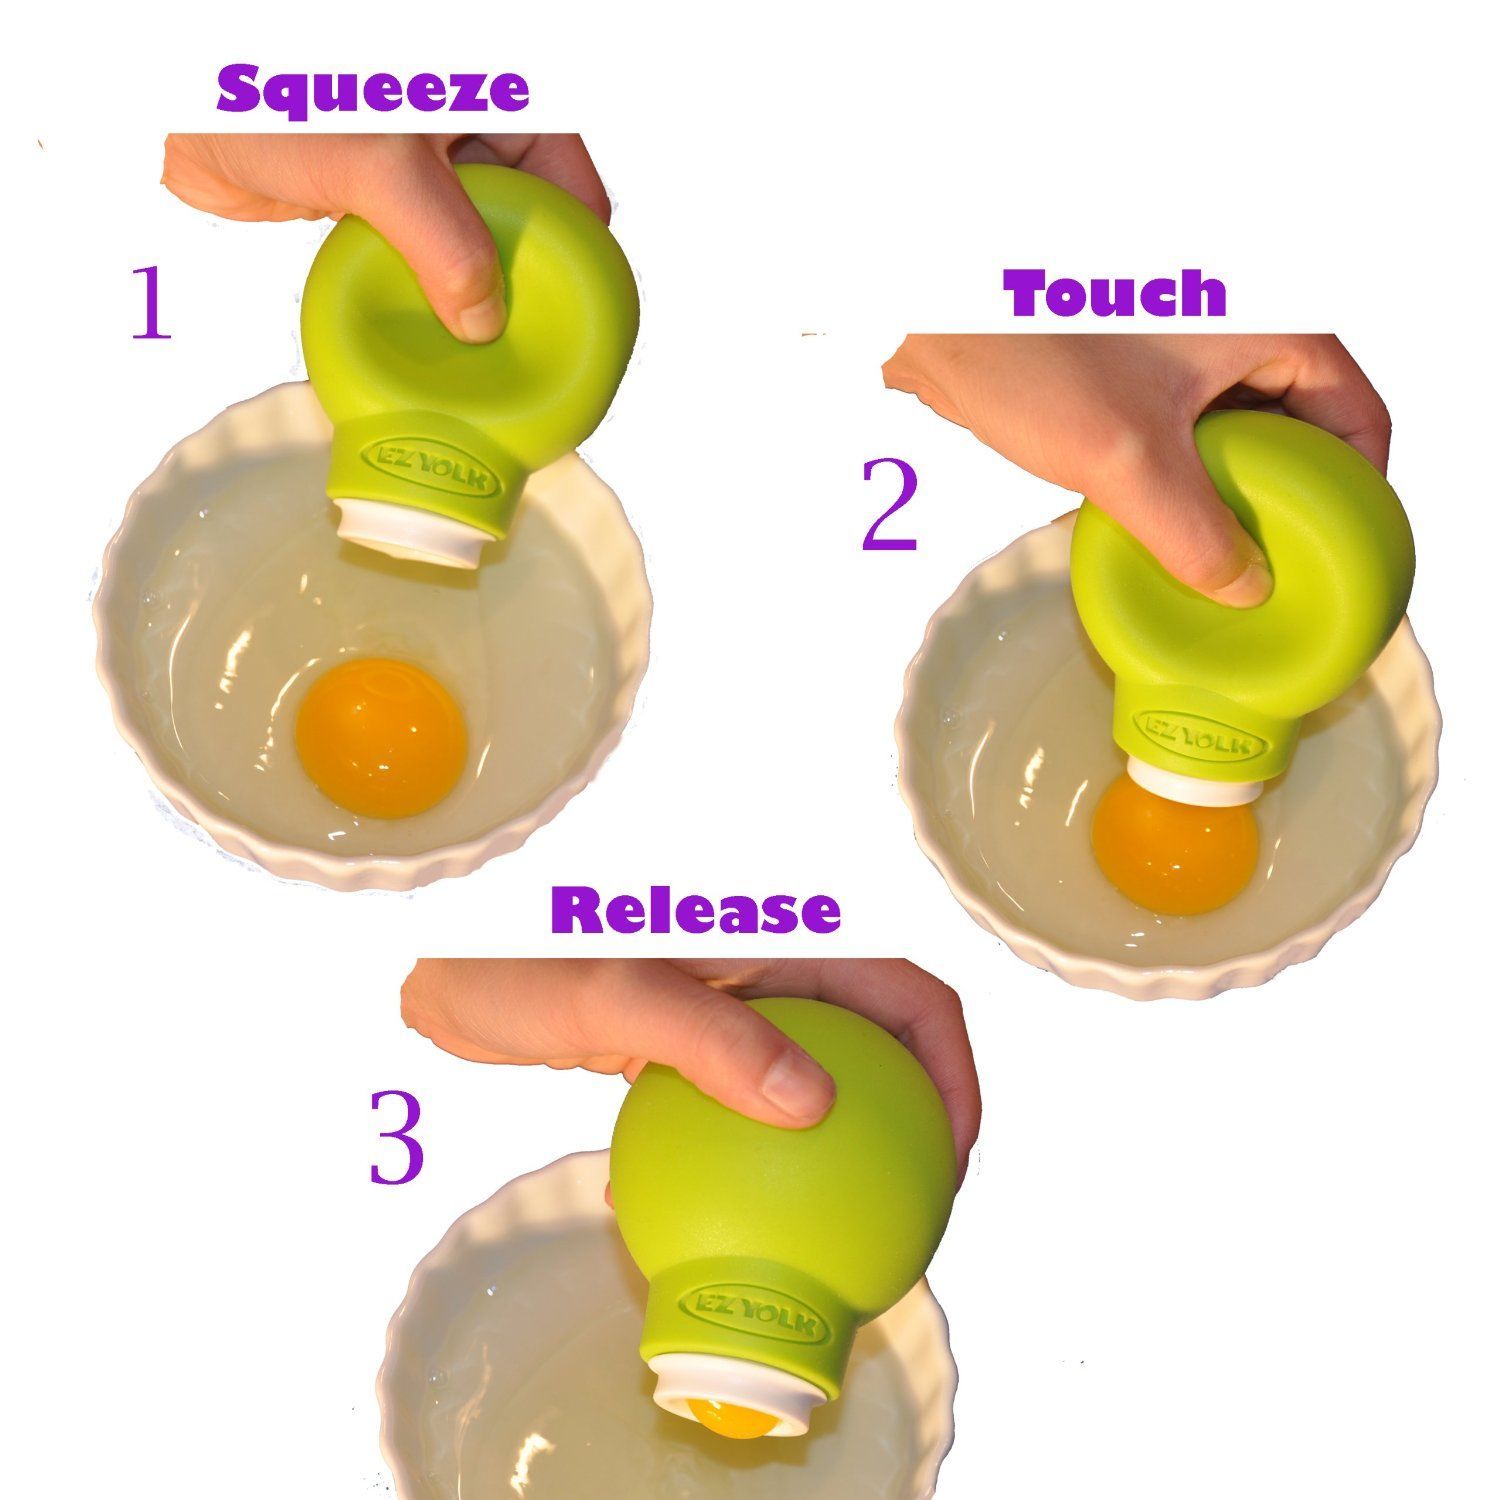 egg separator